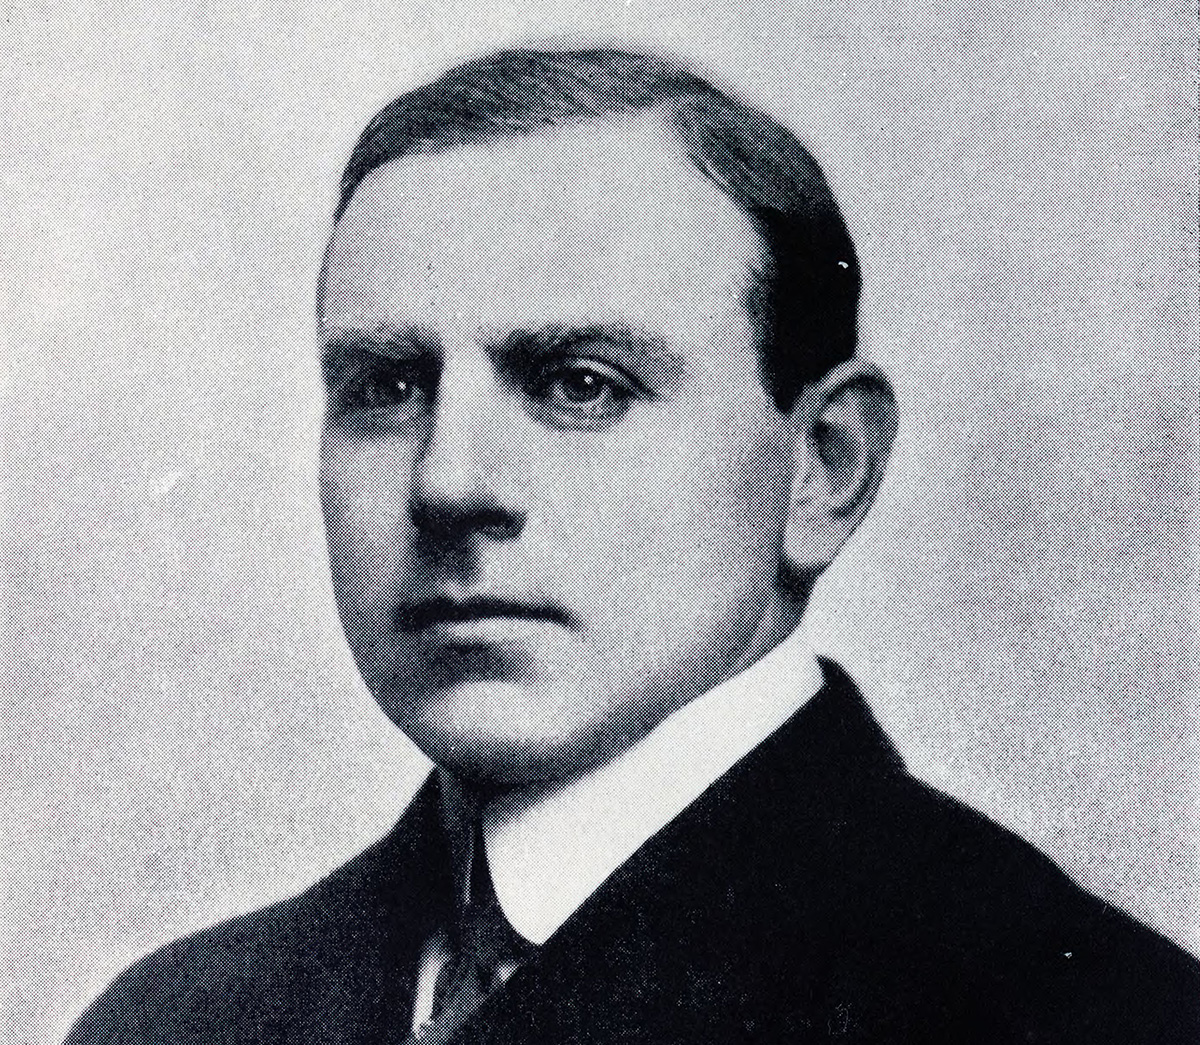 Portrait of Max C. Fleischmann.